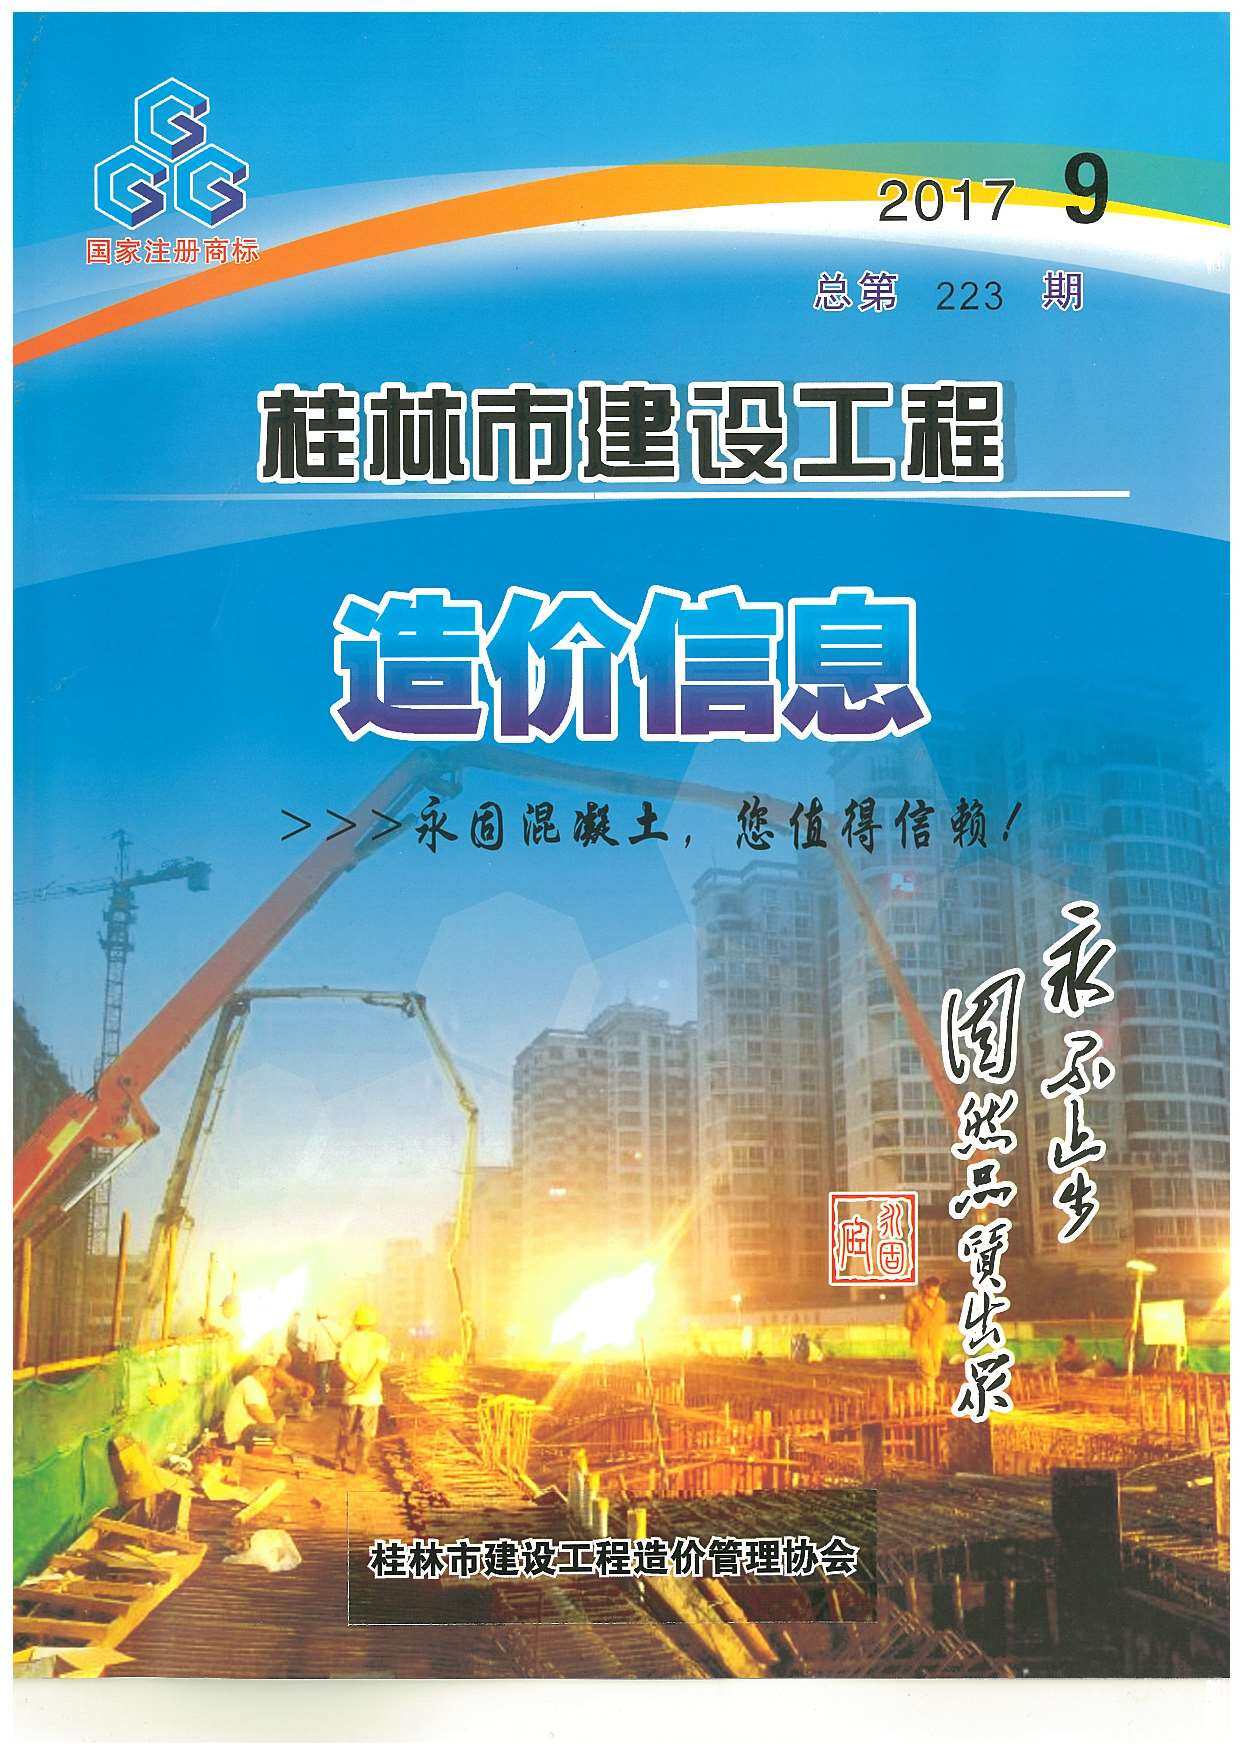 桂林市2017年9月工程造价信息期刊